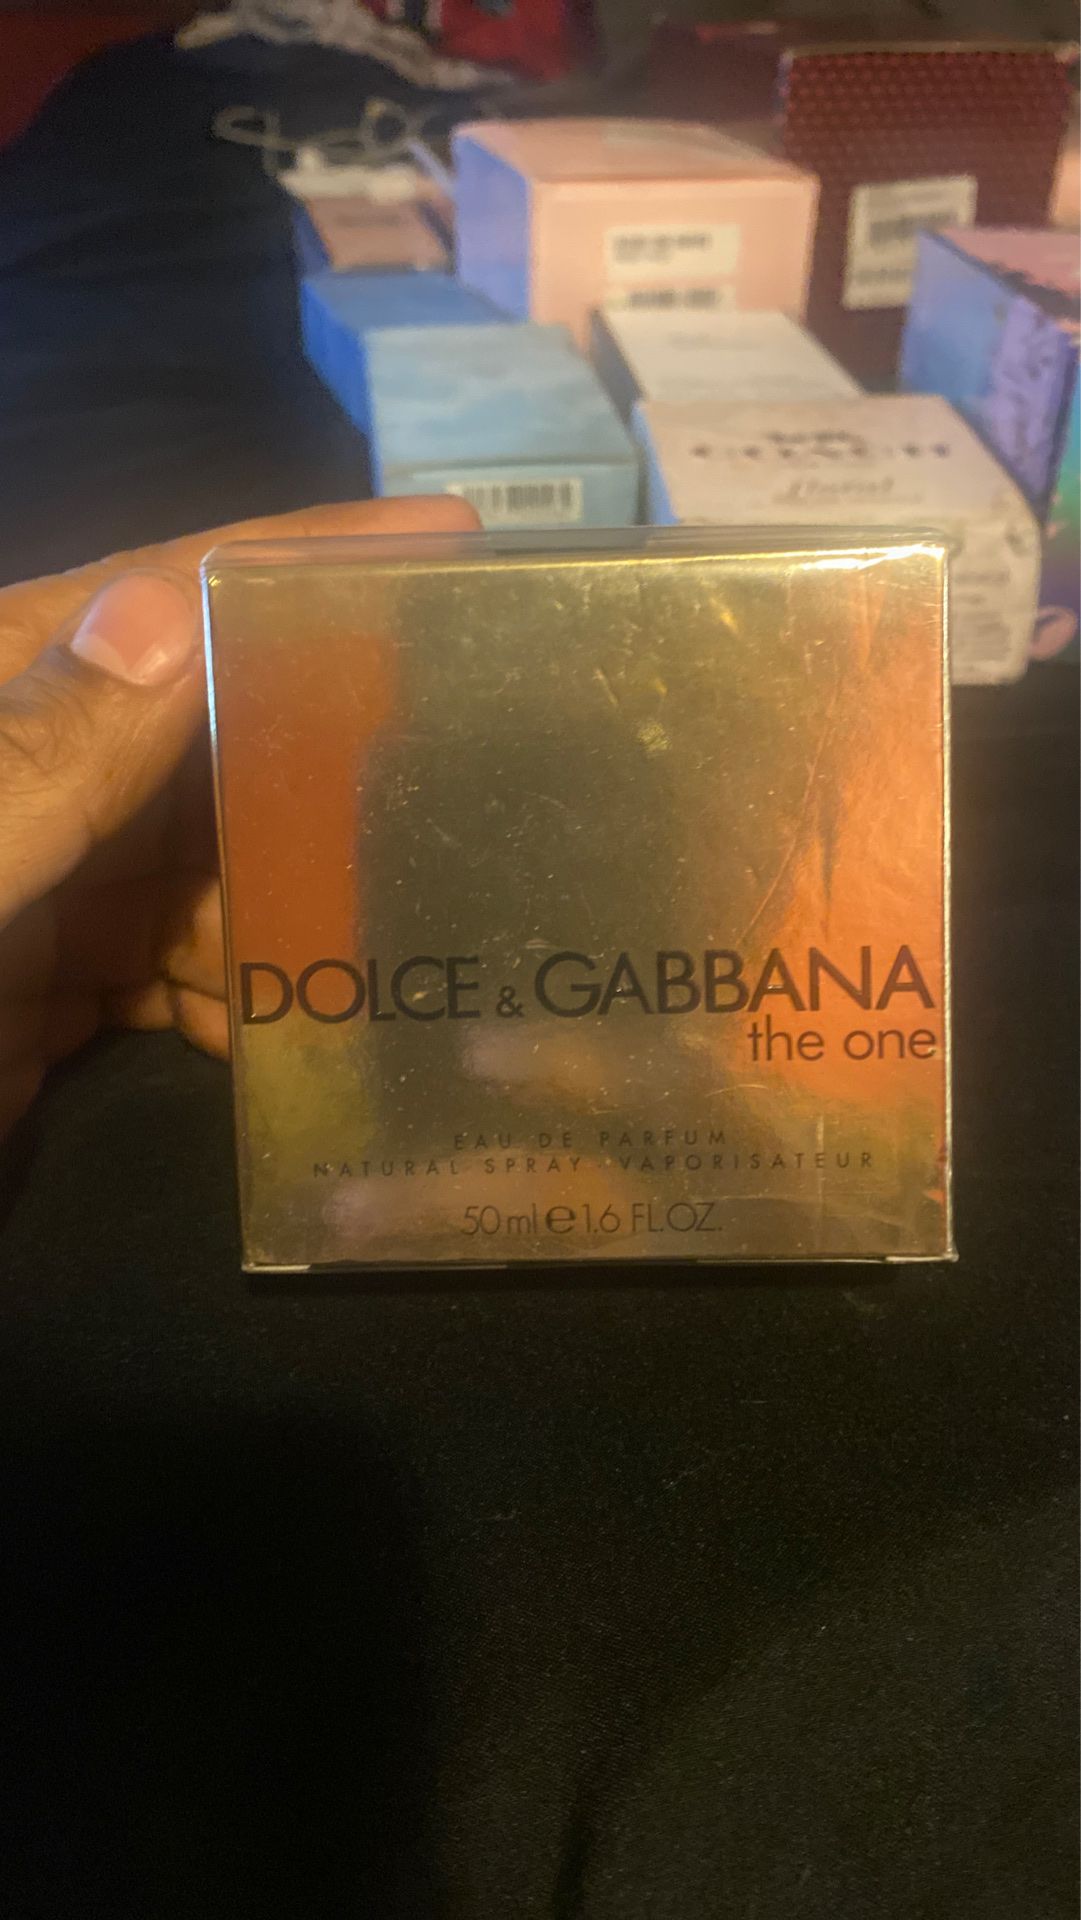 Dolce & Gabbana “The One”